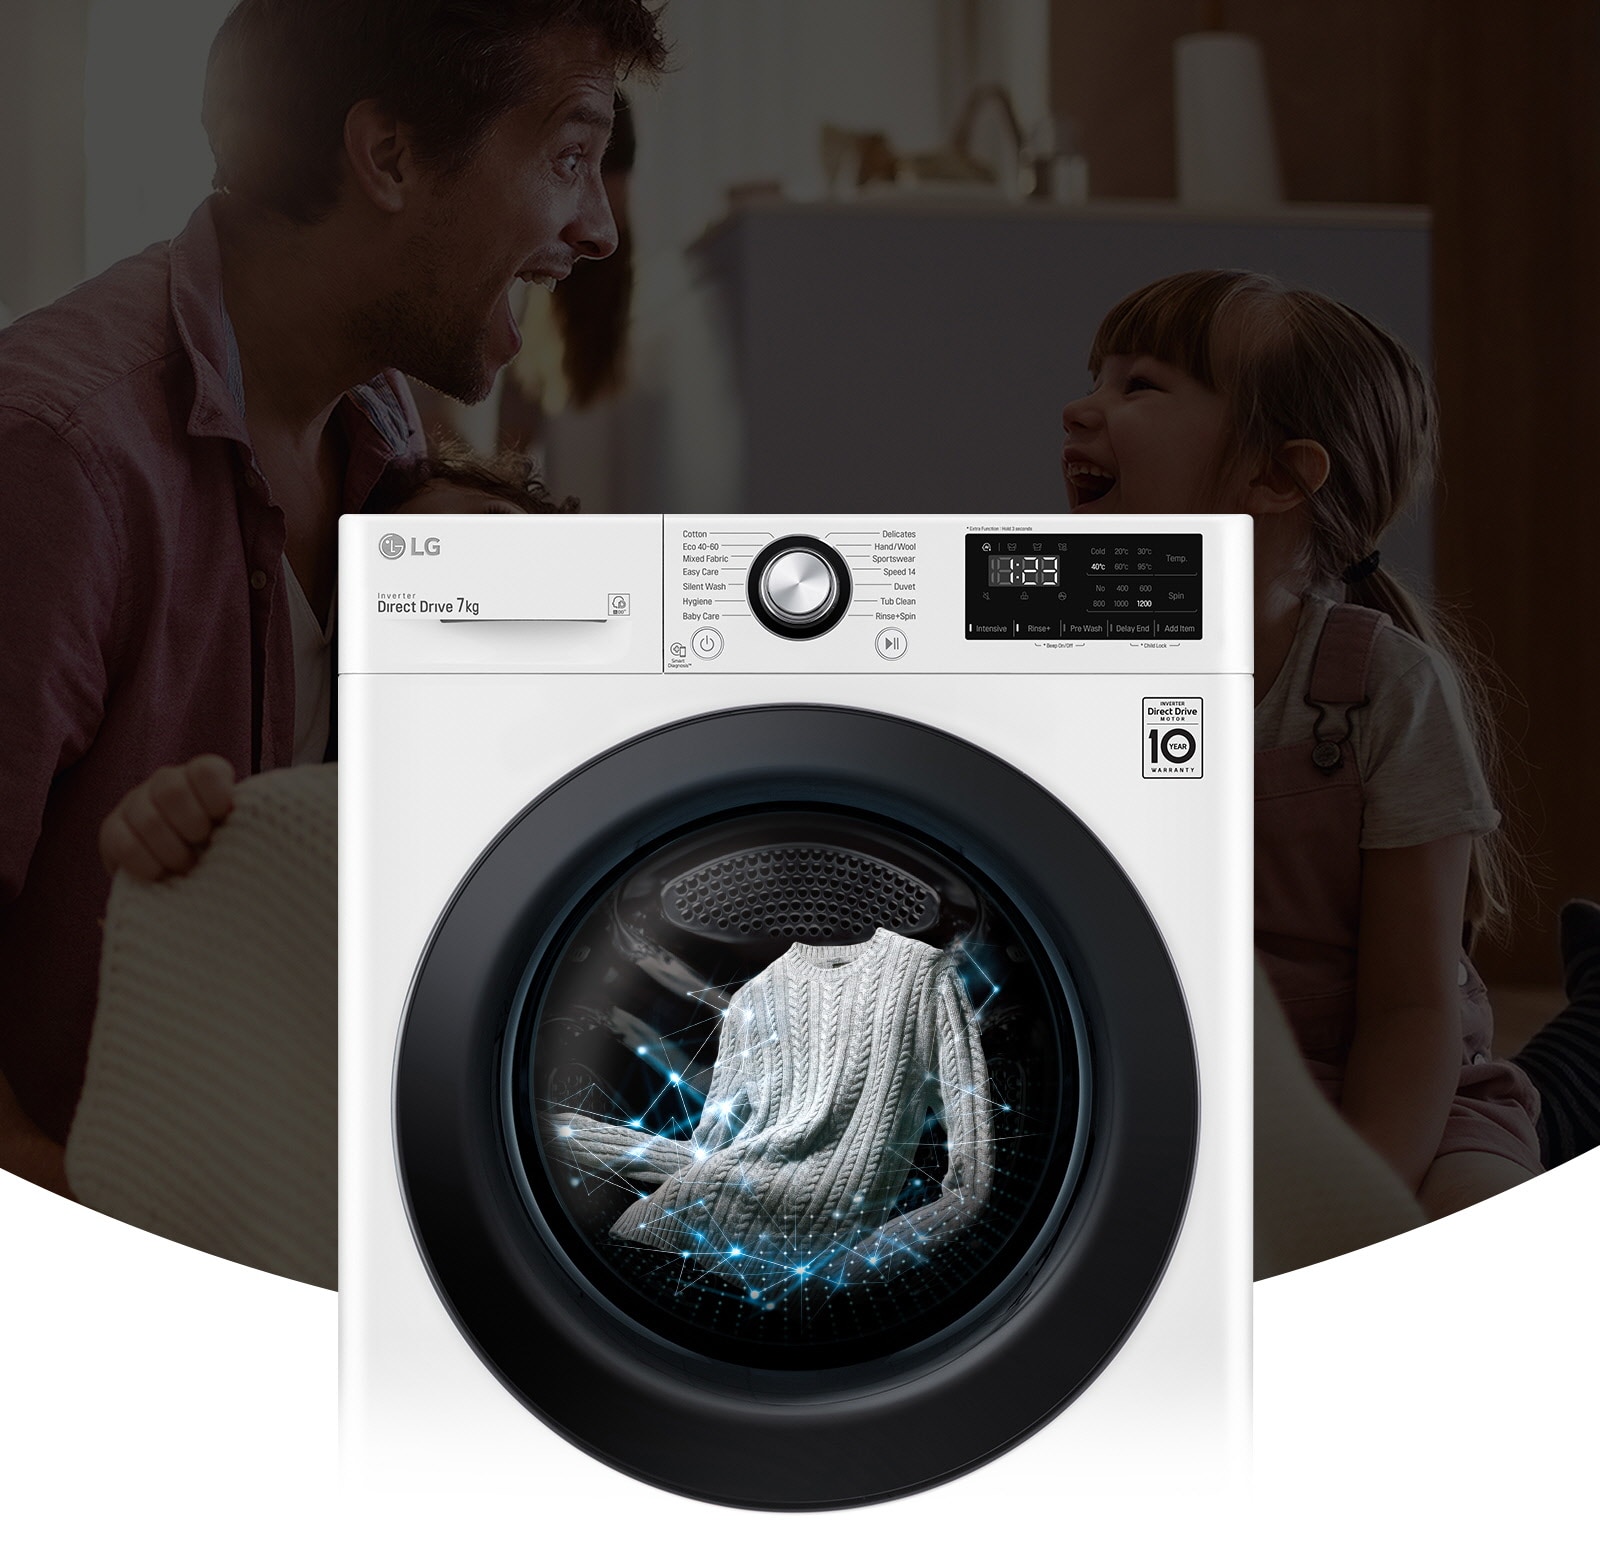 În fața imaginii întunecate care afișează tatăl și fiica zâmbind, este prezentata imaginea unei  mașini de spălat. Mașina se află în funcționare, spălând rufe.